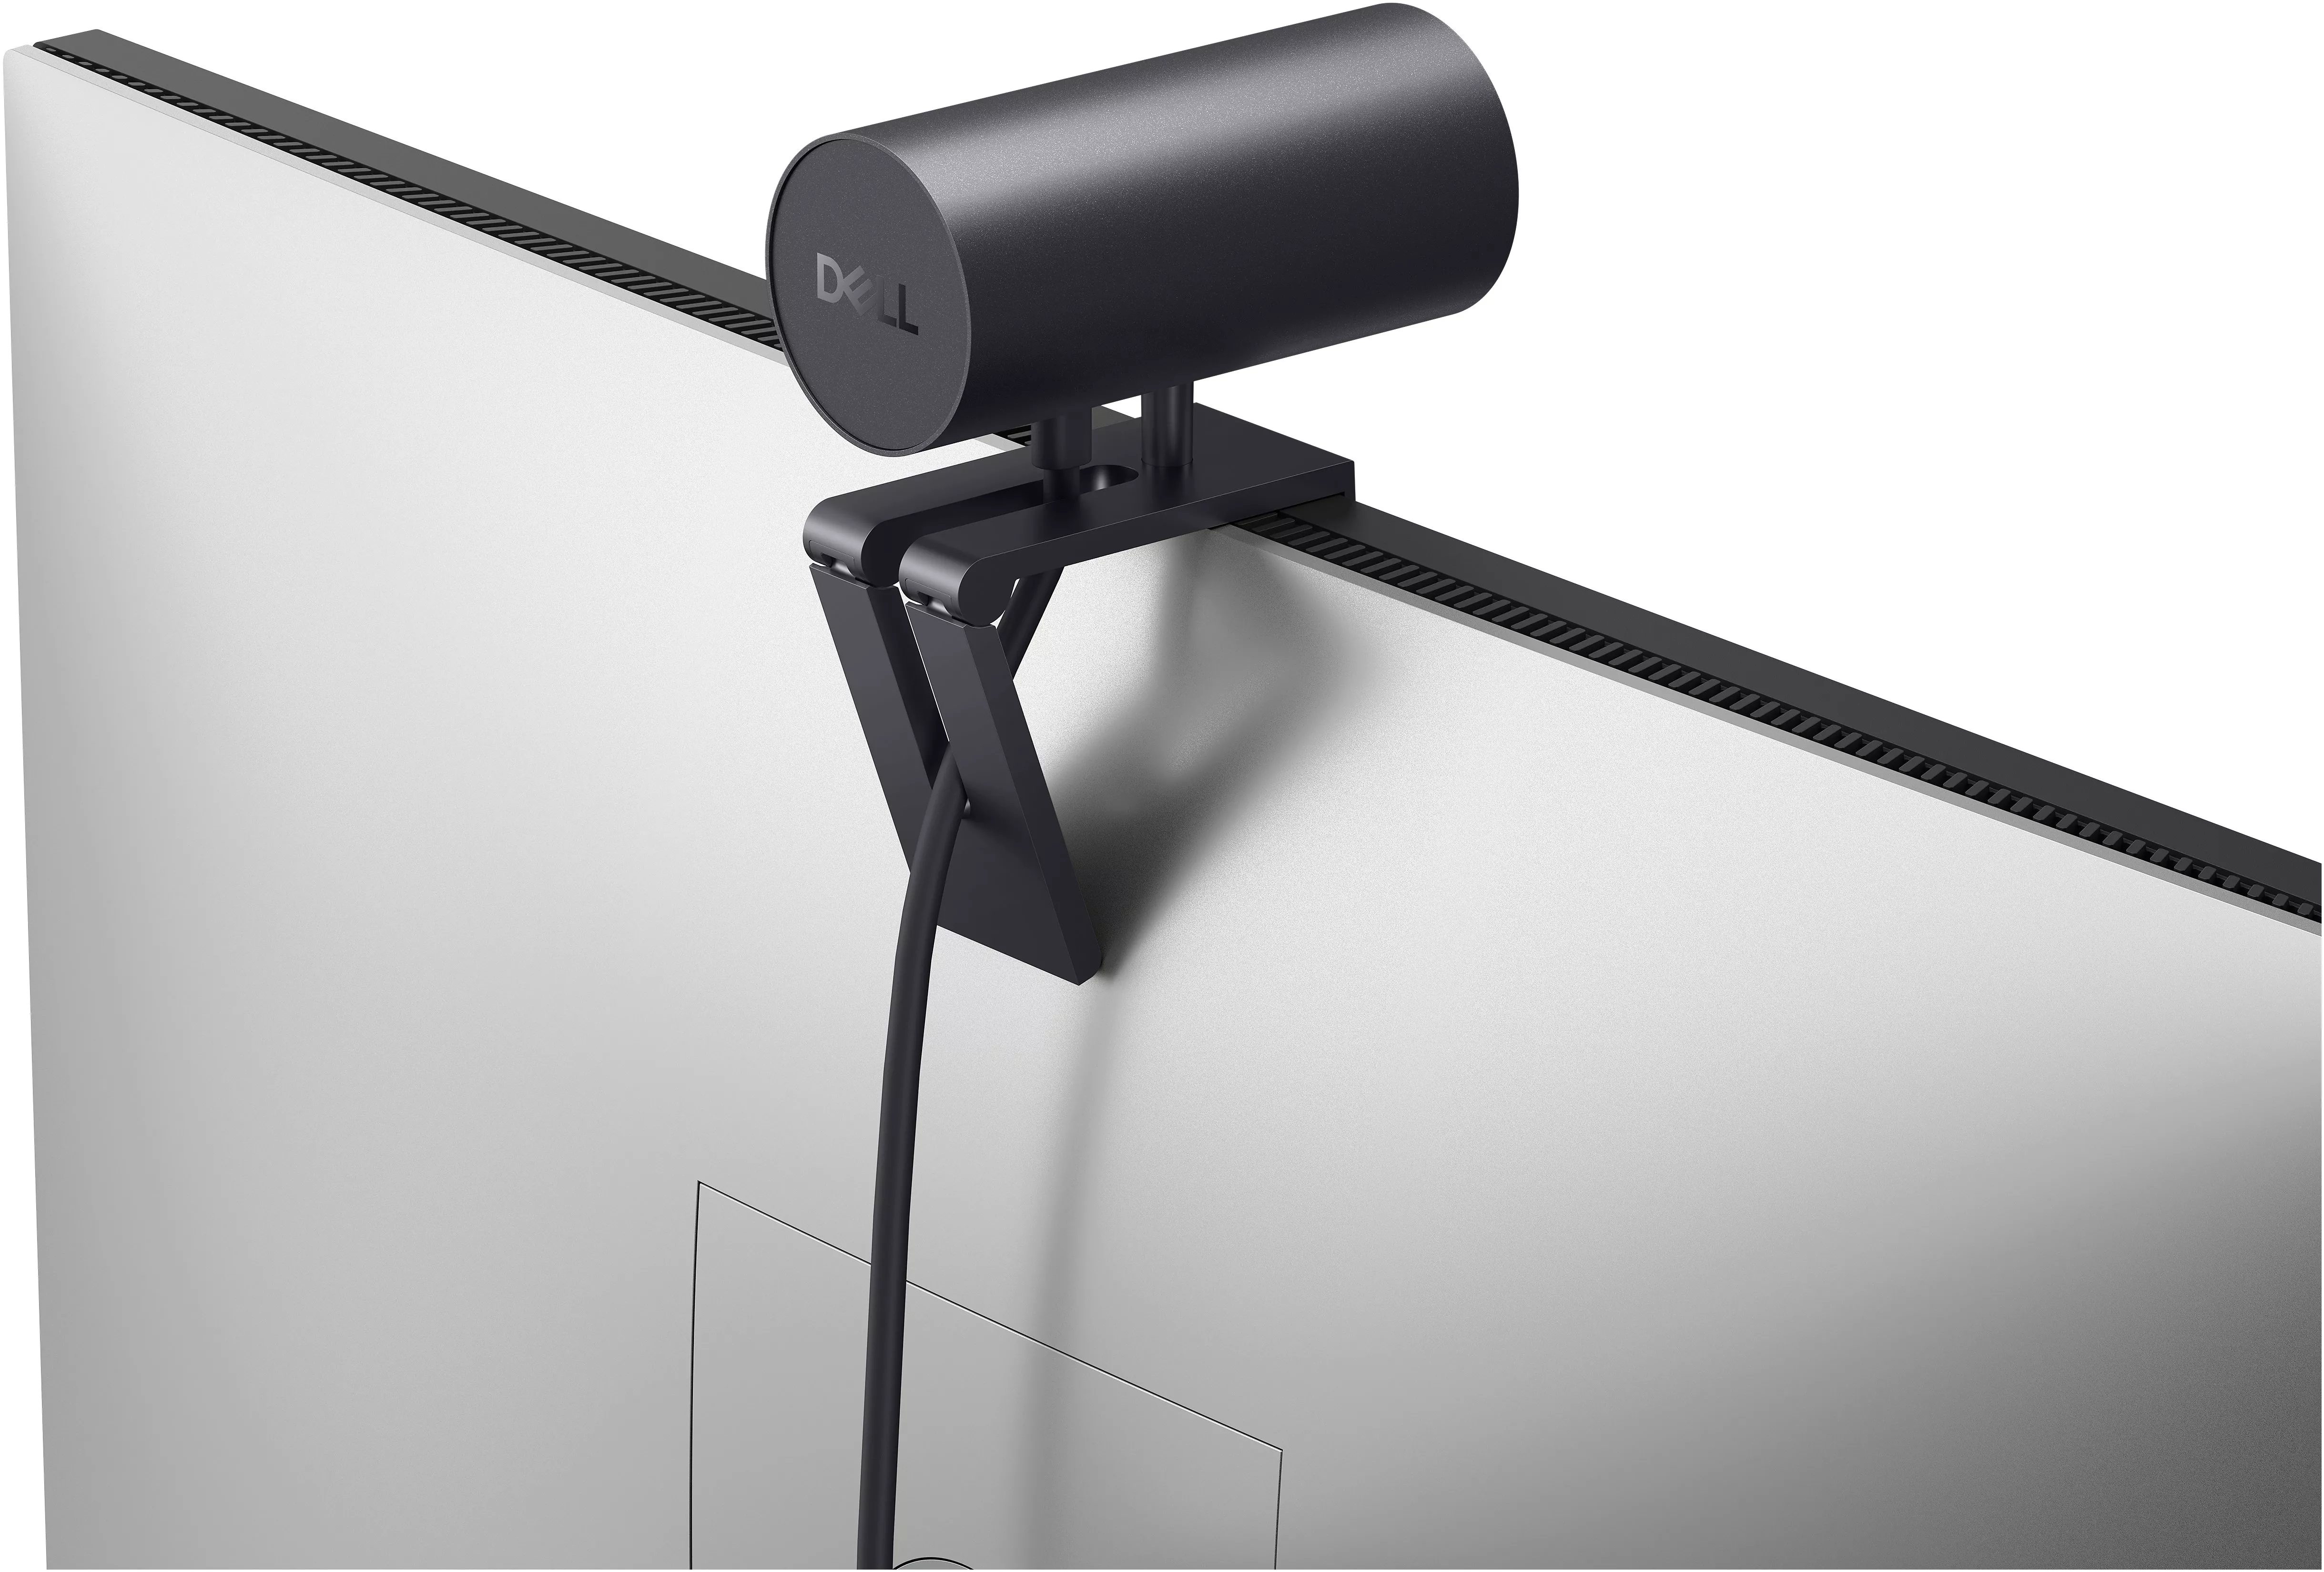 Vente DELL UltraSharp Webcam DELL au meilleur prix - visuel 4